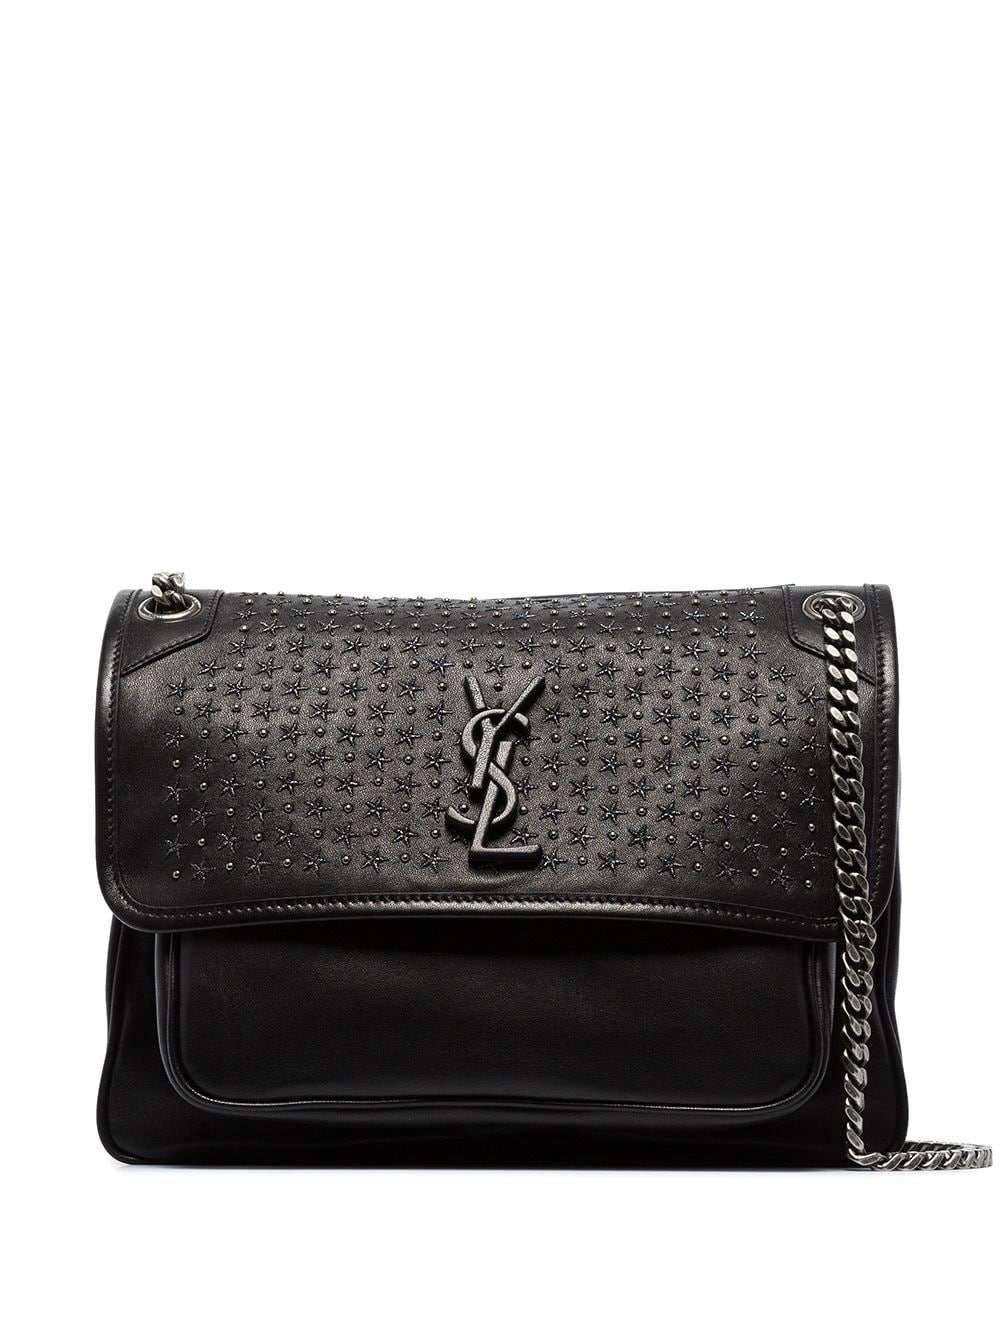 Saint Laurent Niki Medium Stud Embellished Leather Shoulder Bag - Farfetch